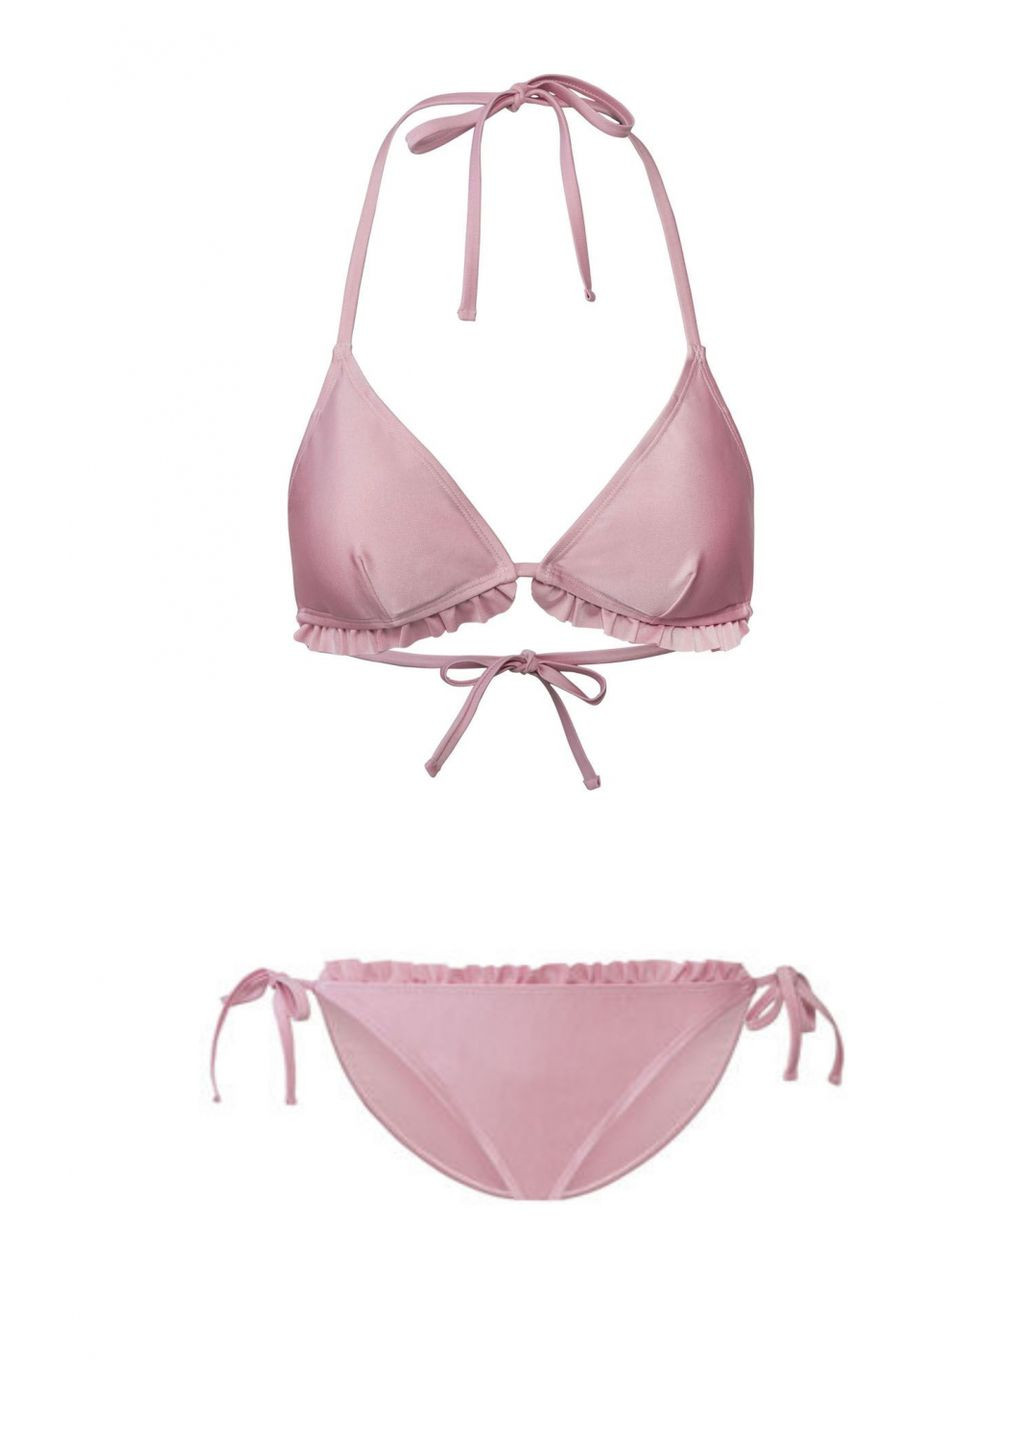 Розовый купальник раздельный на подкладке для женщины lycra® 348526 бикини Esmara